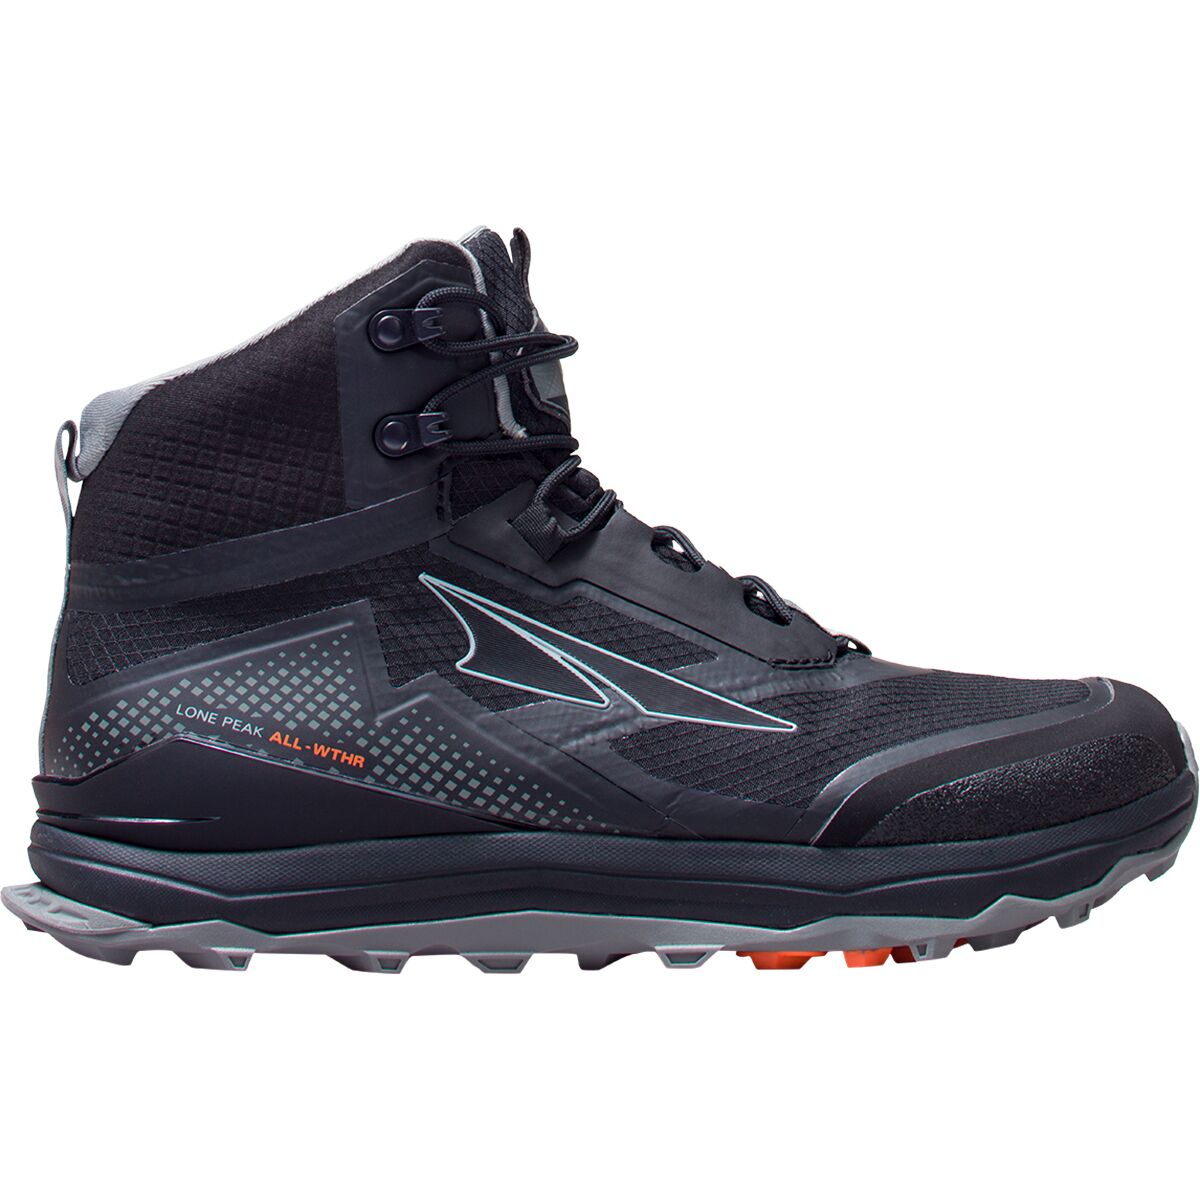 Altra Lone Peak All-Weather Mid Hiking Shoe - Men's - Footwear